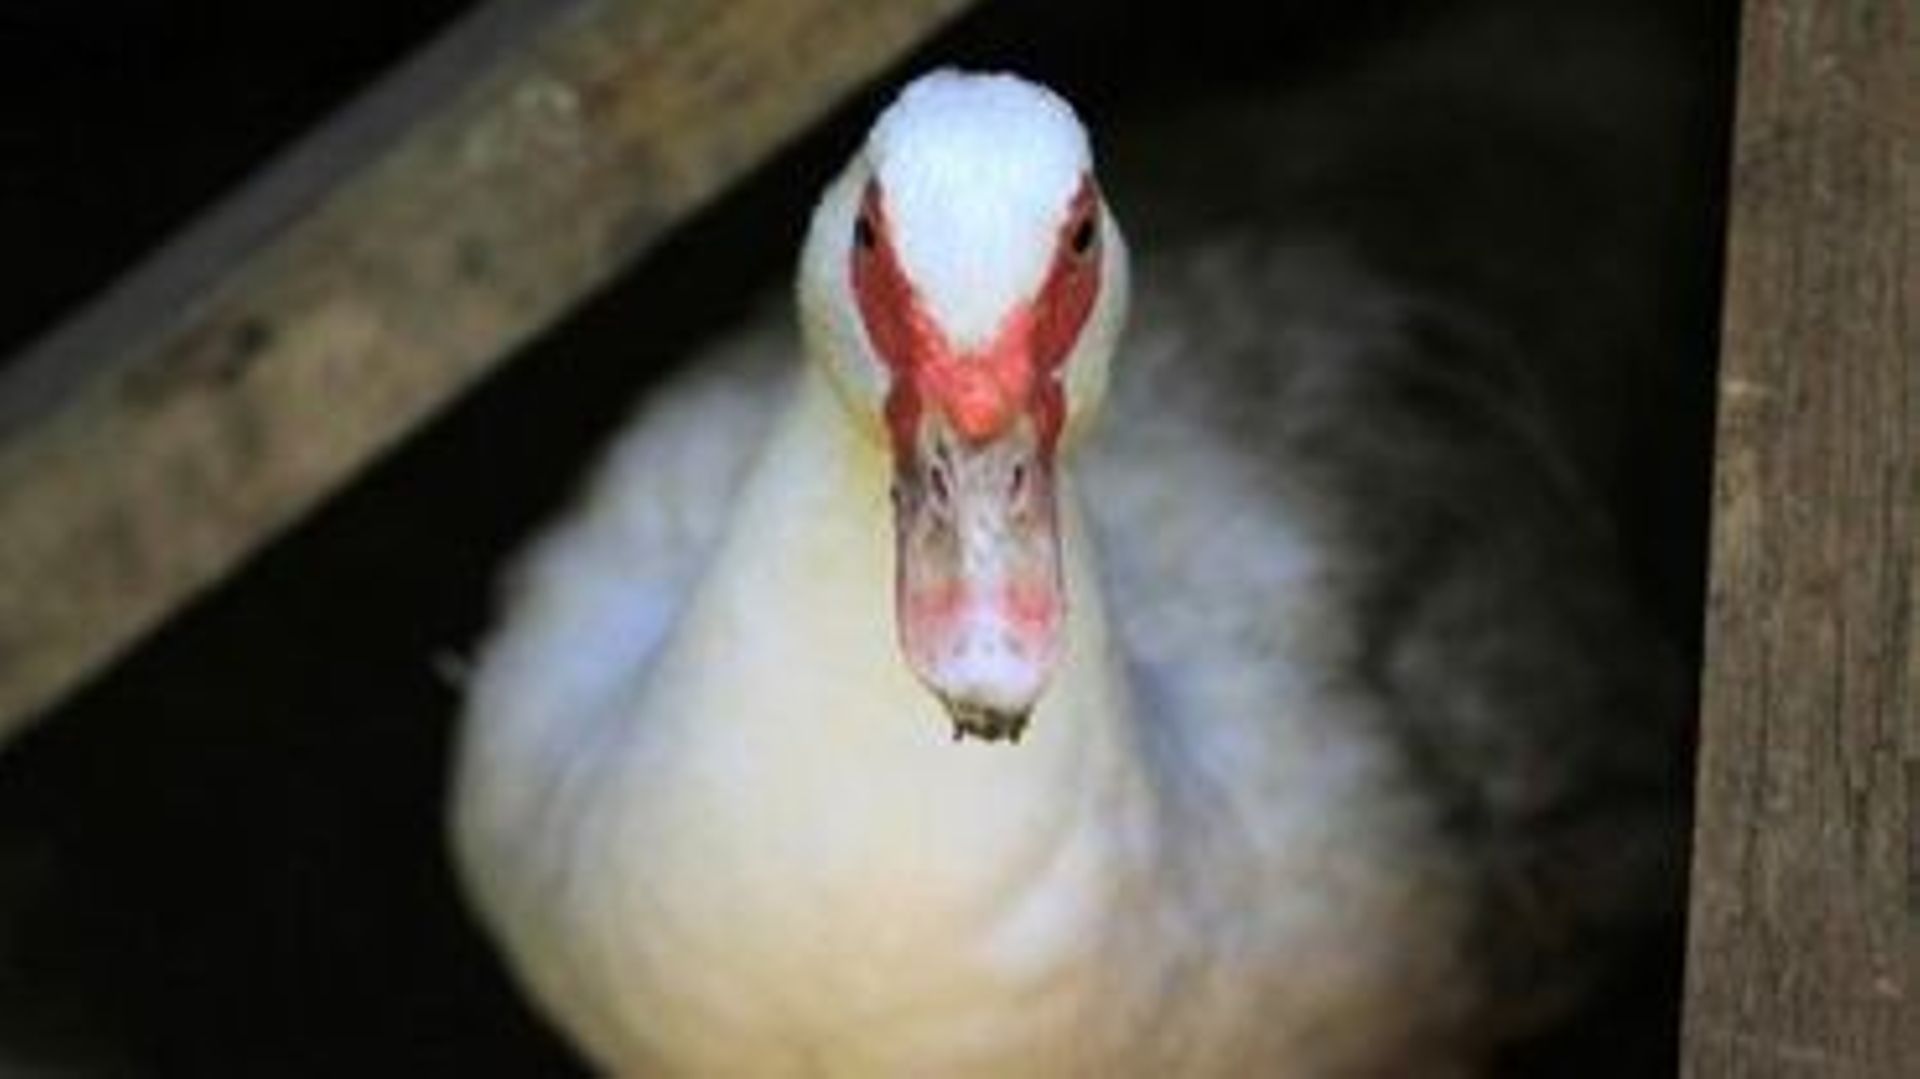 Plus de 180 canards sont morts à la suite de l'action d'Animal Resistance, selon le producteur de foie gras